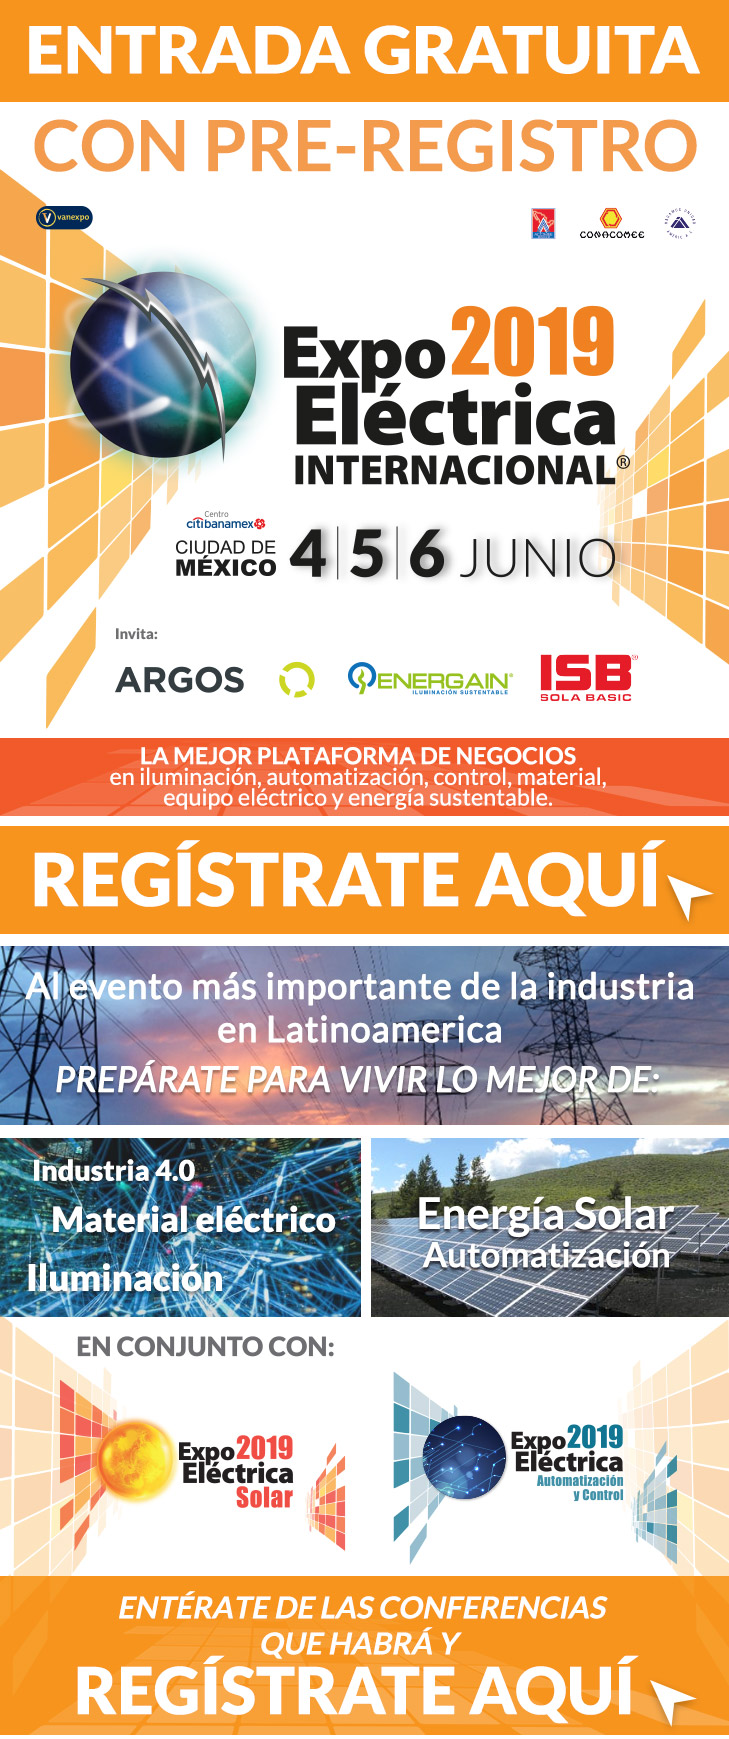 Pre-registro Expo Eléctrica Internacional 2019